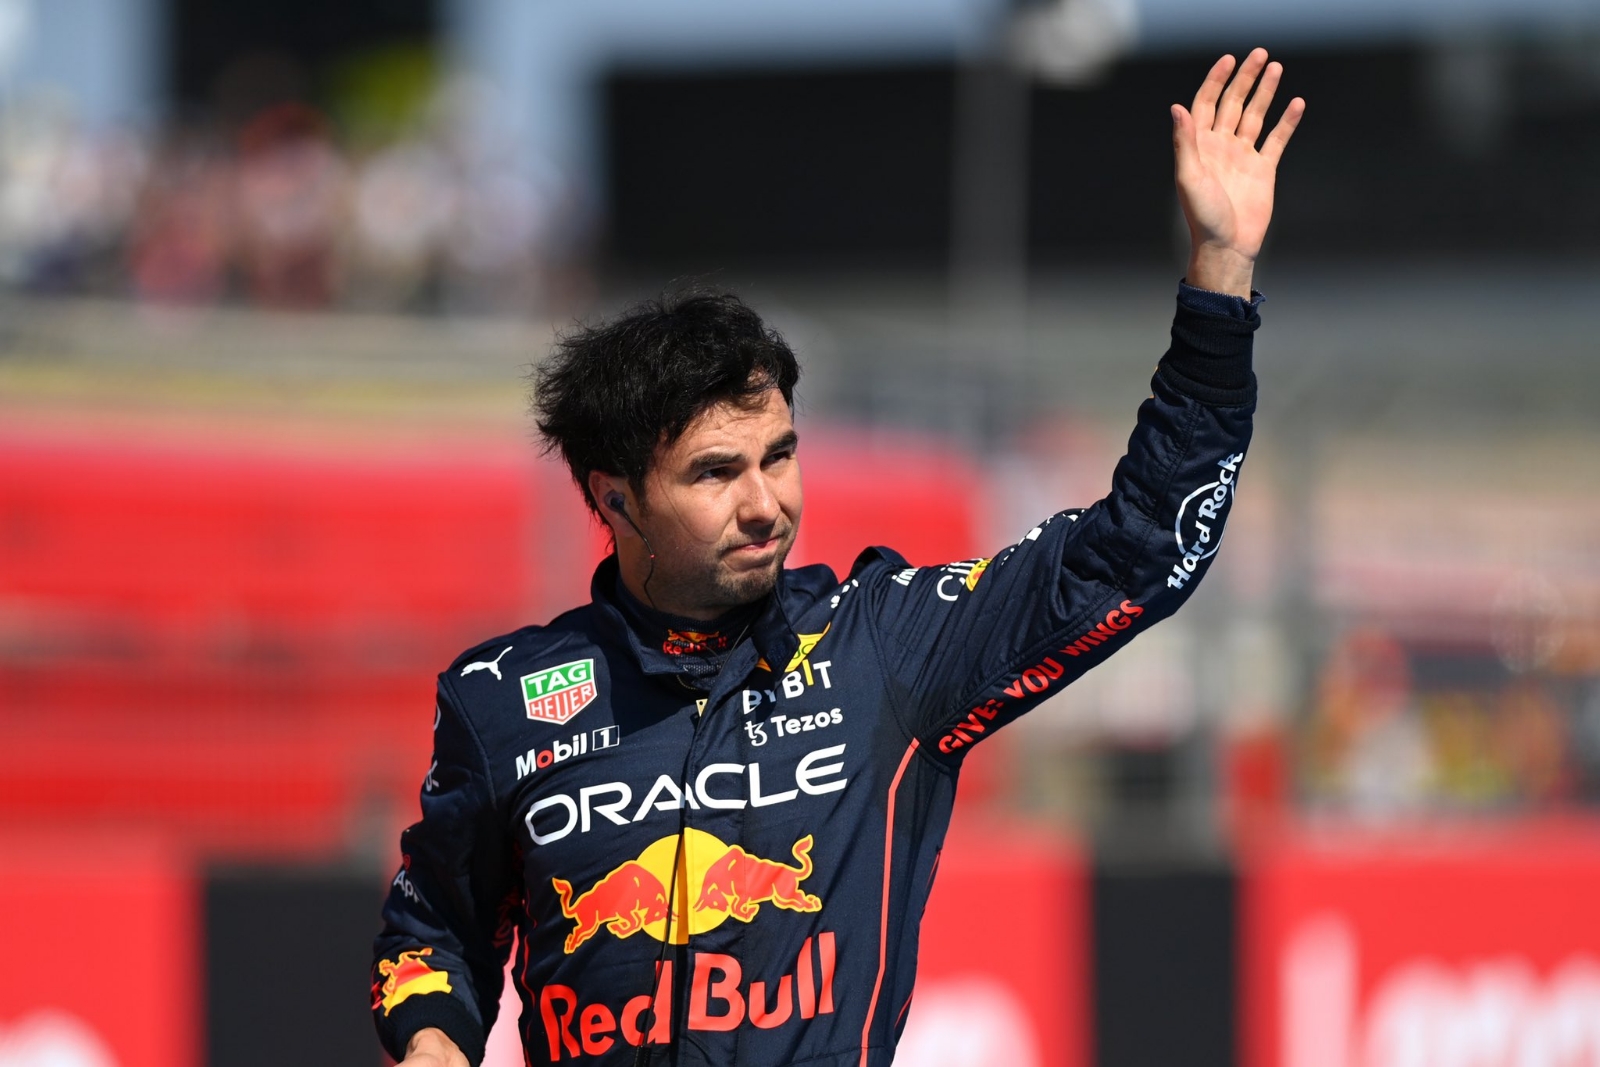 Checo Pérez saldrá en cuarto lugar en la parrilla del Gran Premio de Japón